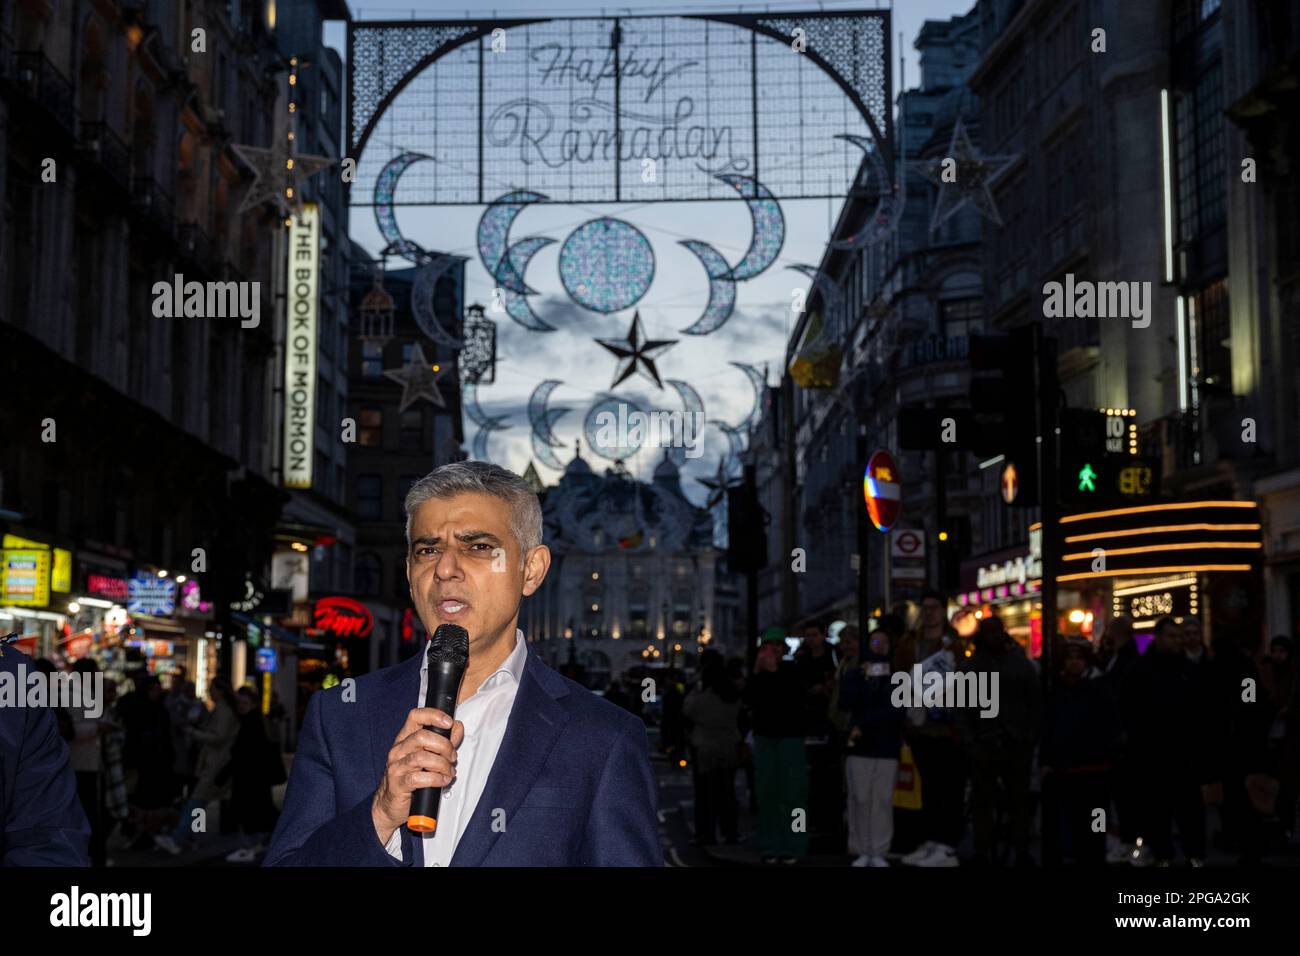 Londres, Reino Unido. 21 de marzo de 2023. Sadiq Khan, alcalde de Londres, asiste al encendido de la primera instalación de luces de Ramadán en Piccadilly Circus en vísperas del primer día de Ramadán 2023. Las luces de esta escala son las primeras en el Reino Unido y Europa, con 30.000 luces sostenibles iluminadas en el centro de Londres durante todo el mes de Ramadán. Crédito: Stephen Chung / Alamy Live News Foto de stock